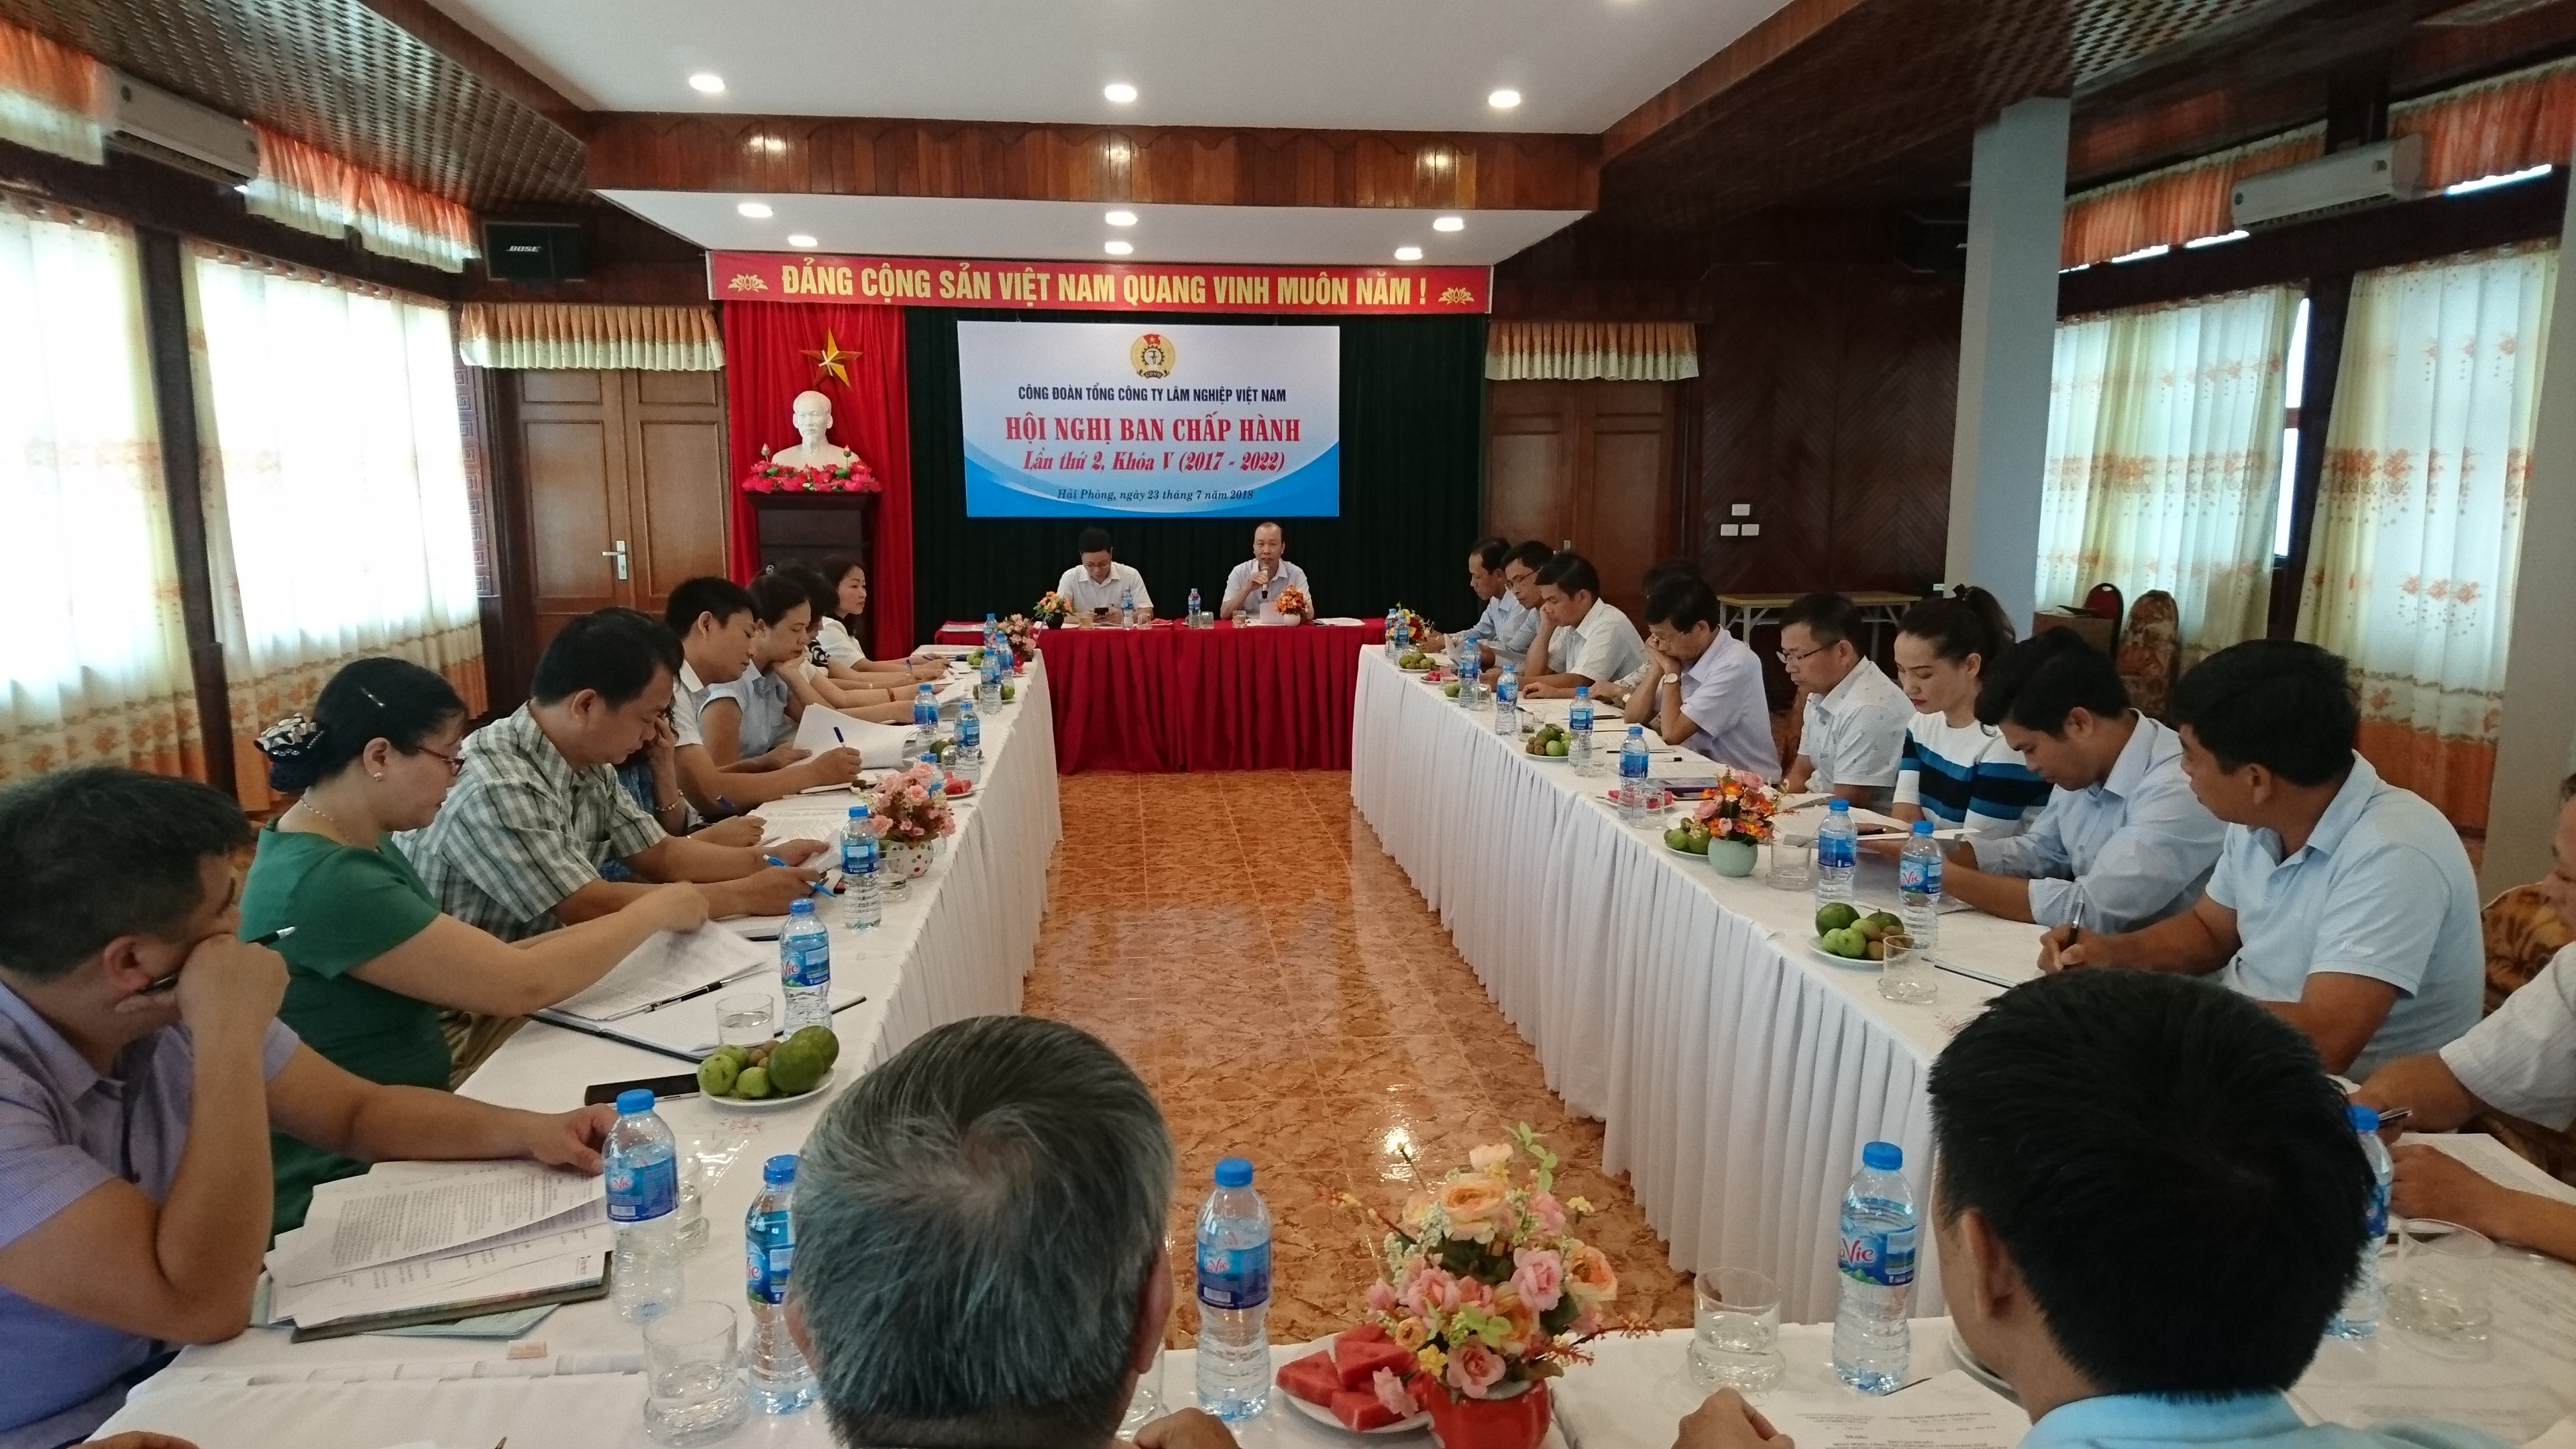 Công đoàn Tổng công ty Lâm nghiệp Việt Nam tổ chức Hội nghị BCH lần thứ 2 khóa V, giao ban 6 tháng đầu năm và tập huấn cán bộ Công đoàn năm 2018